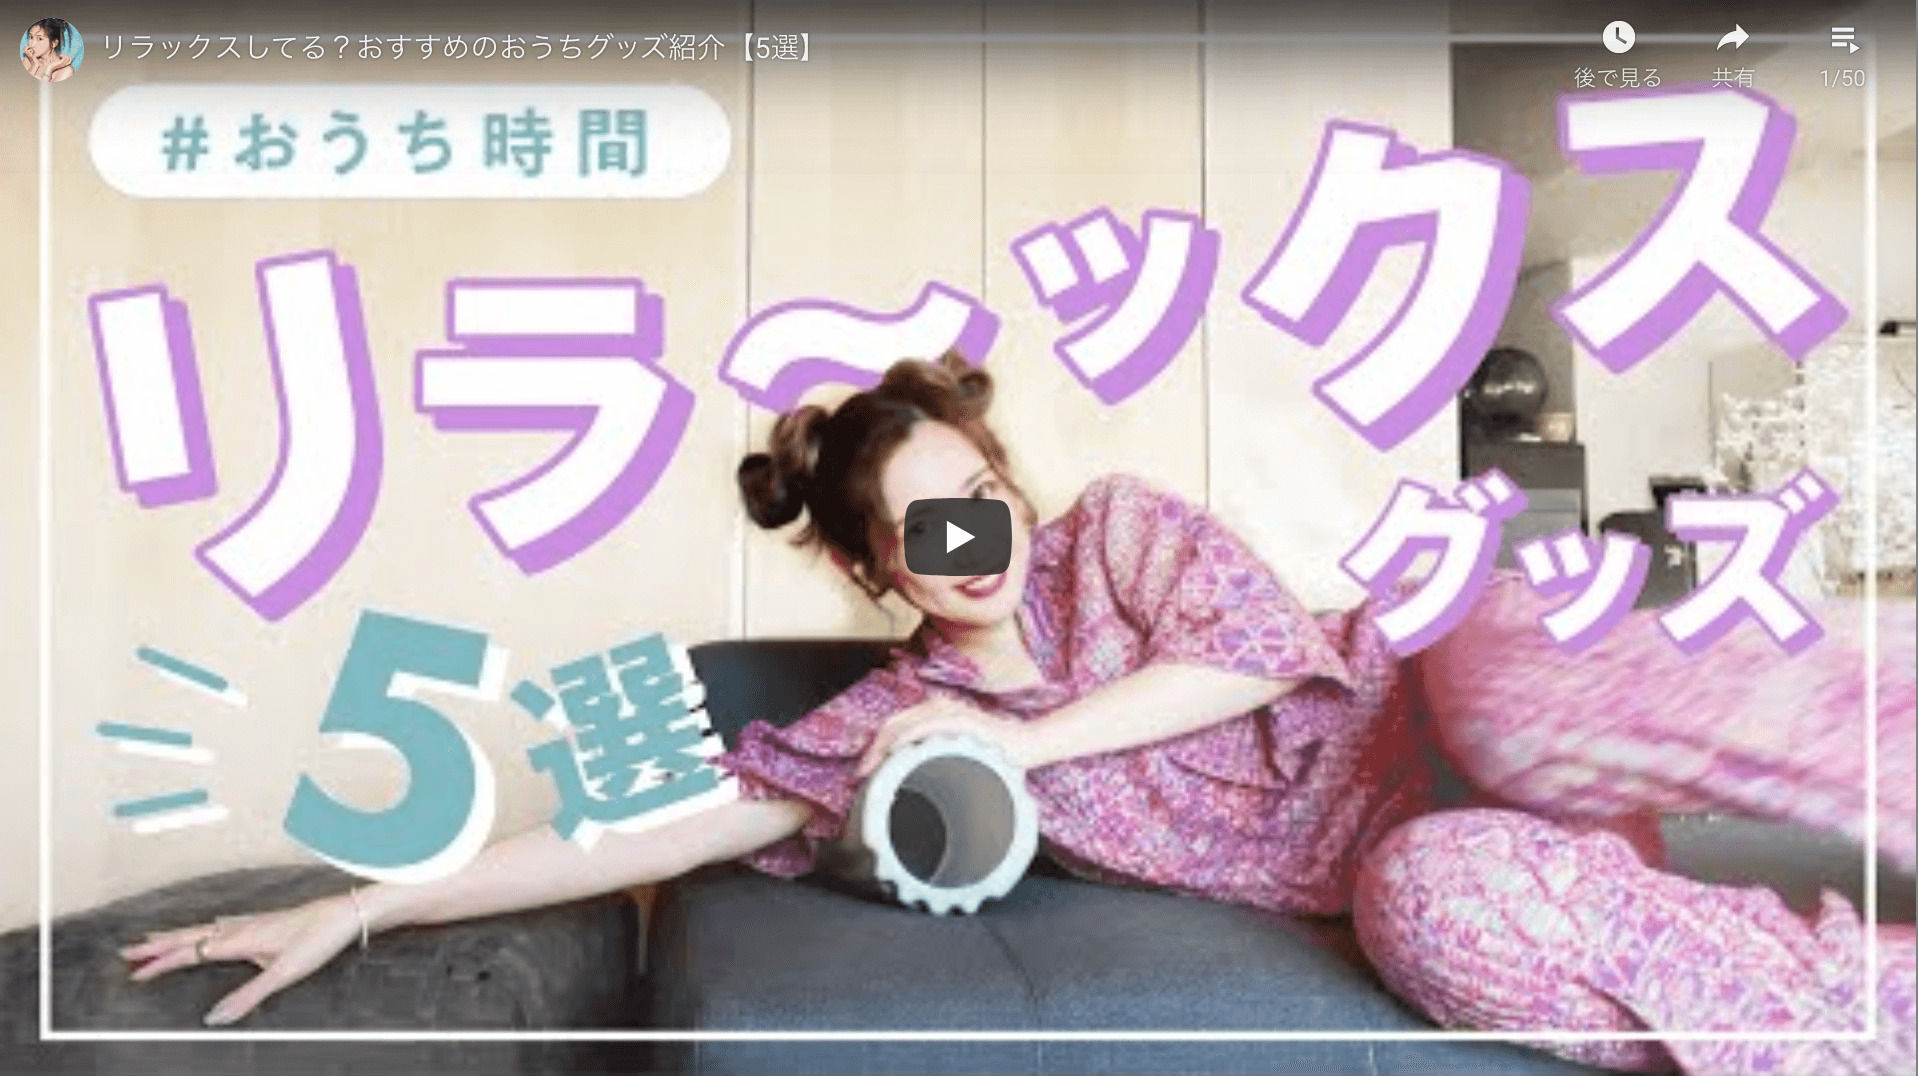 紗栄子さんが「おうち時間のおすすめリラックスグッズ 5選」を公開